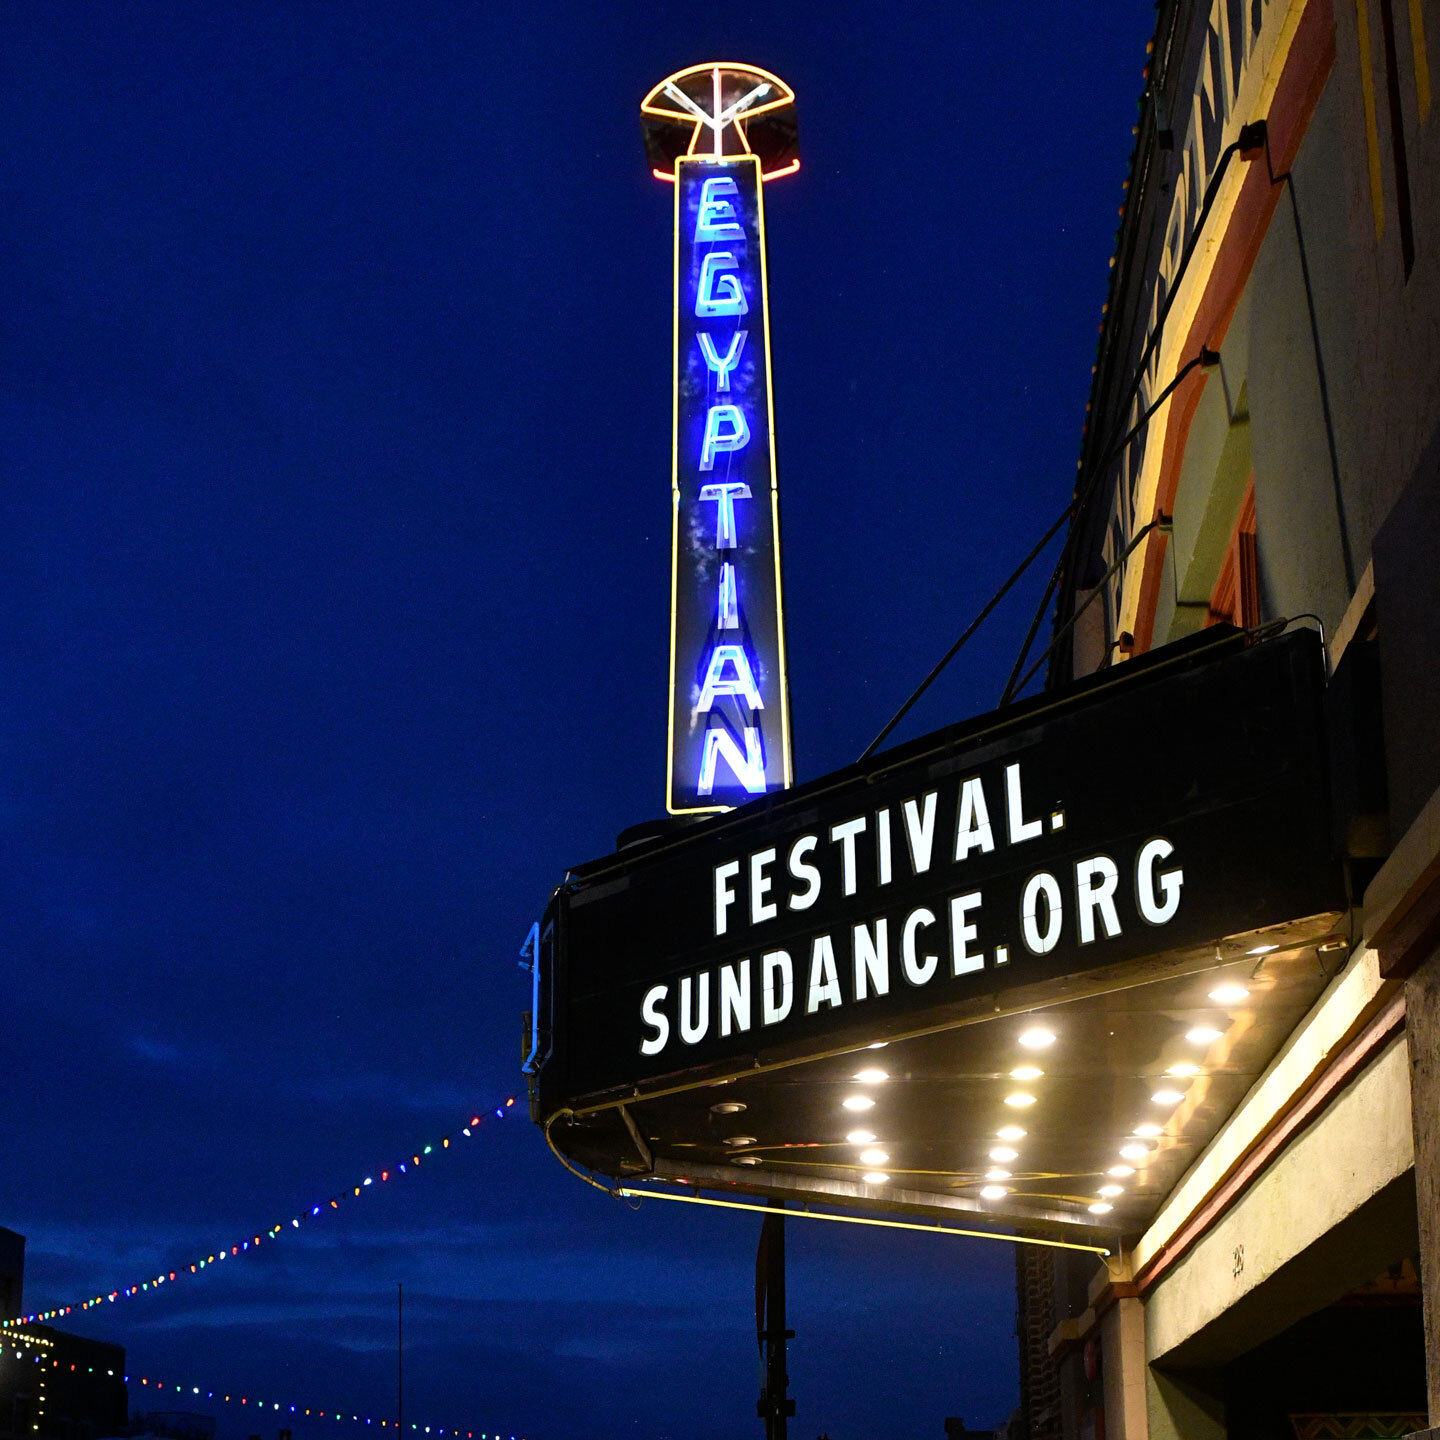 サンダンス映画祭の会場、エジプシャン シアター。入口のひさし部分に「Festival.Sundance.Org」の文字